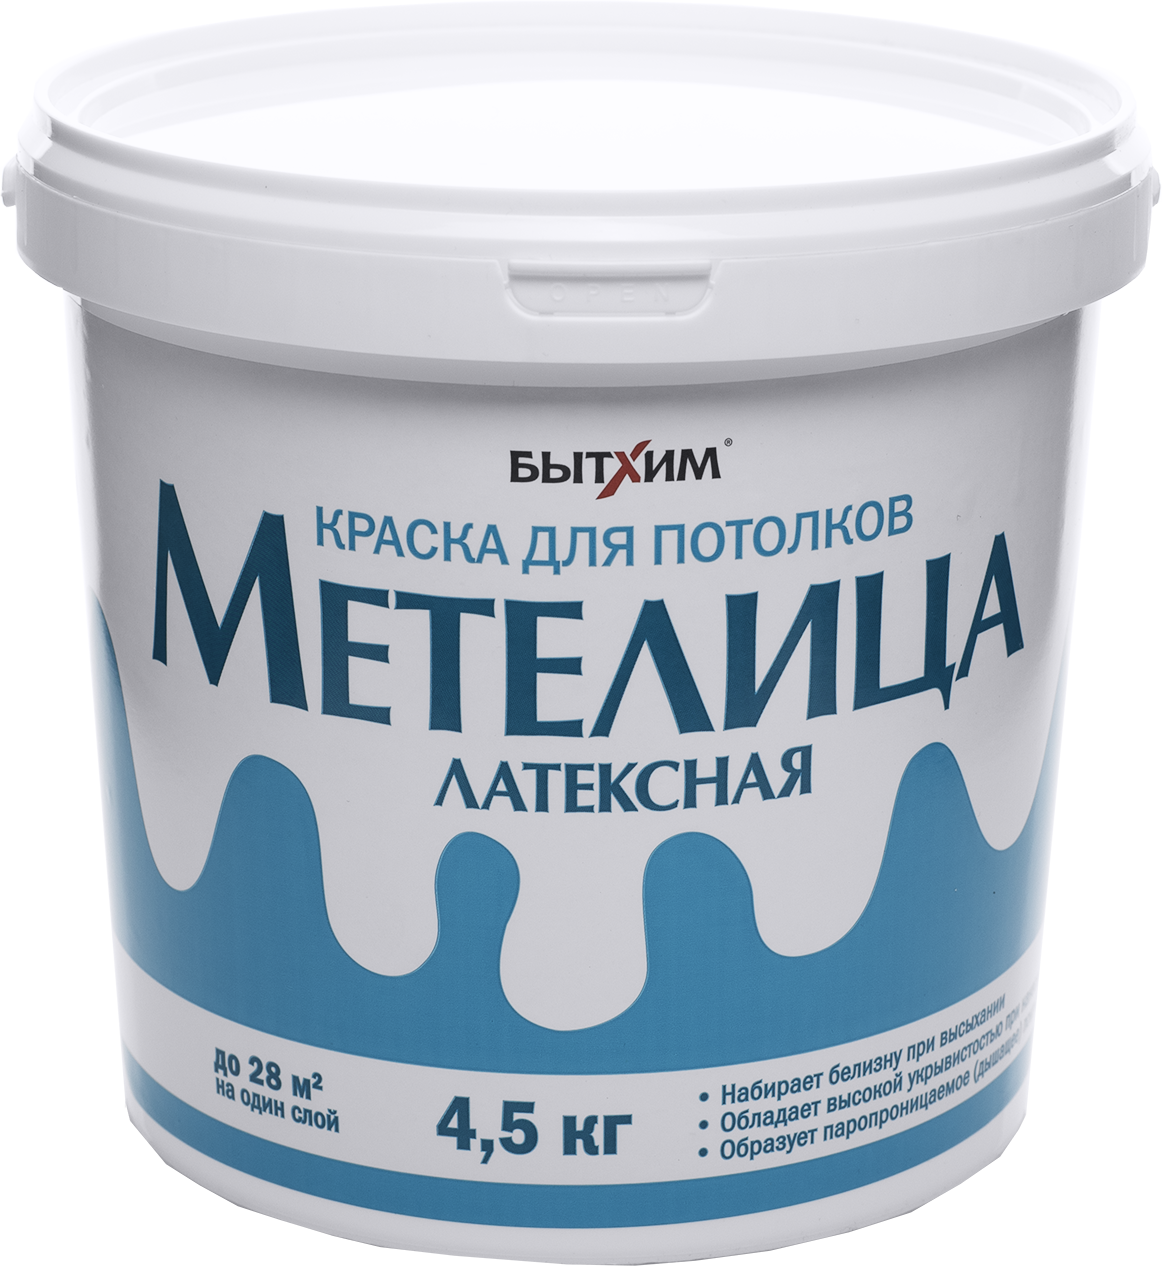 Краска для потолков метелица БЫТХИМ 4,5 кг